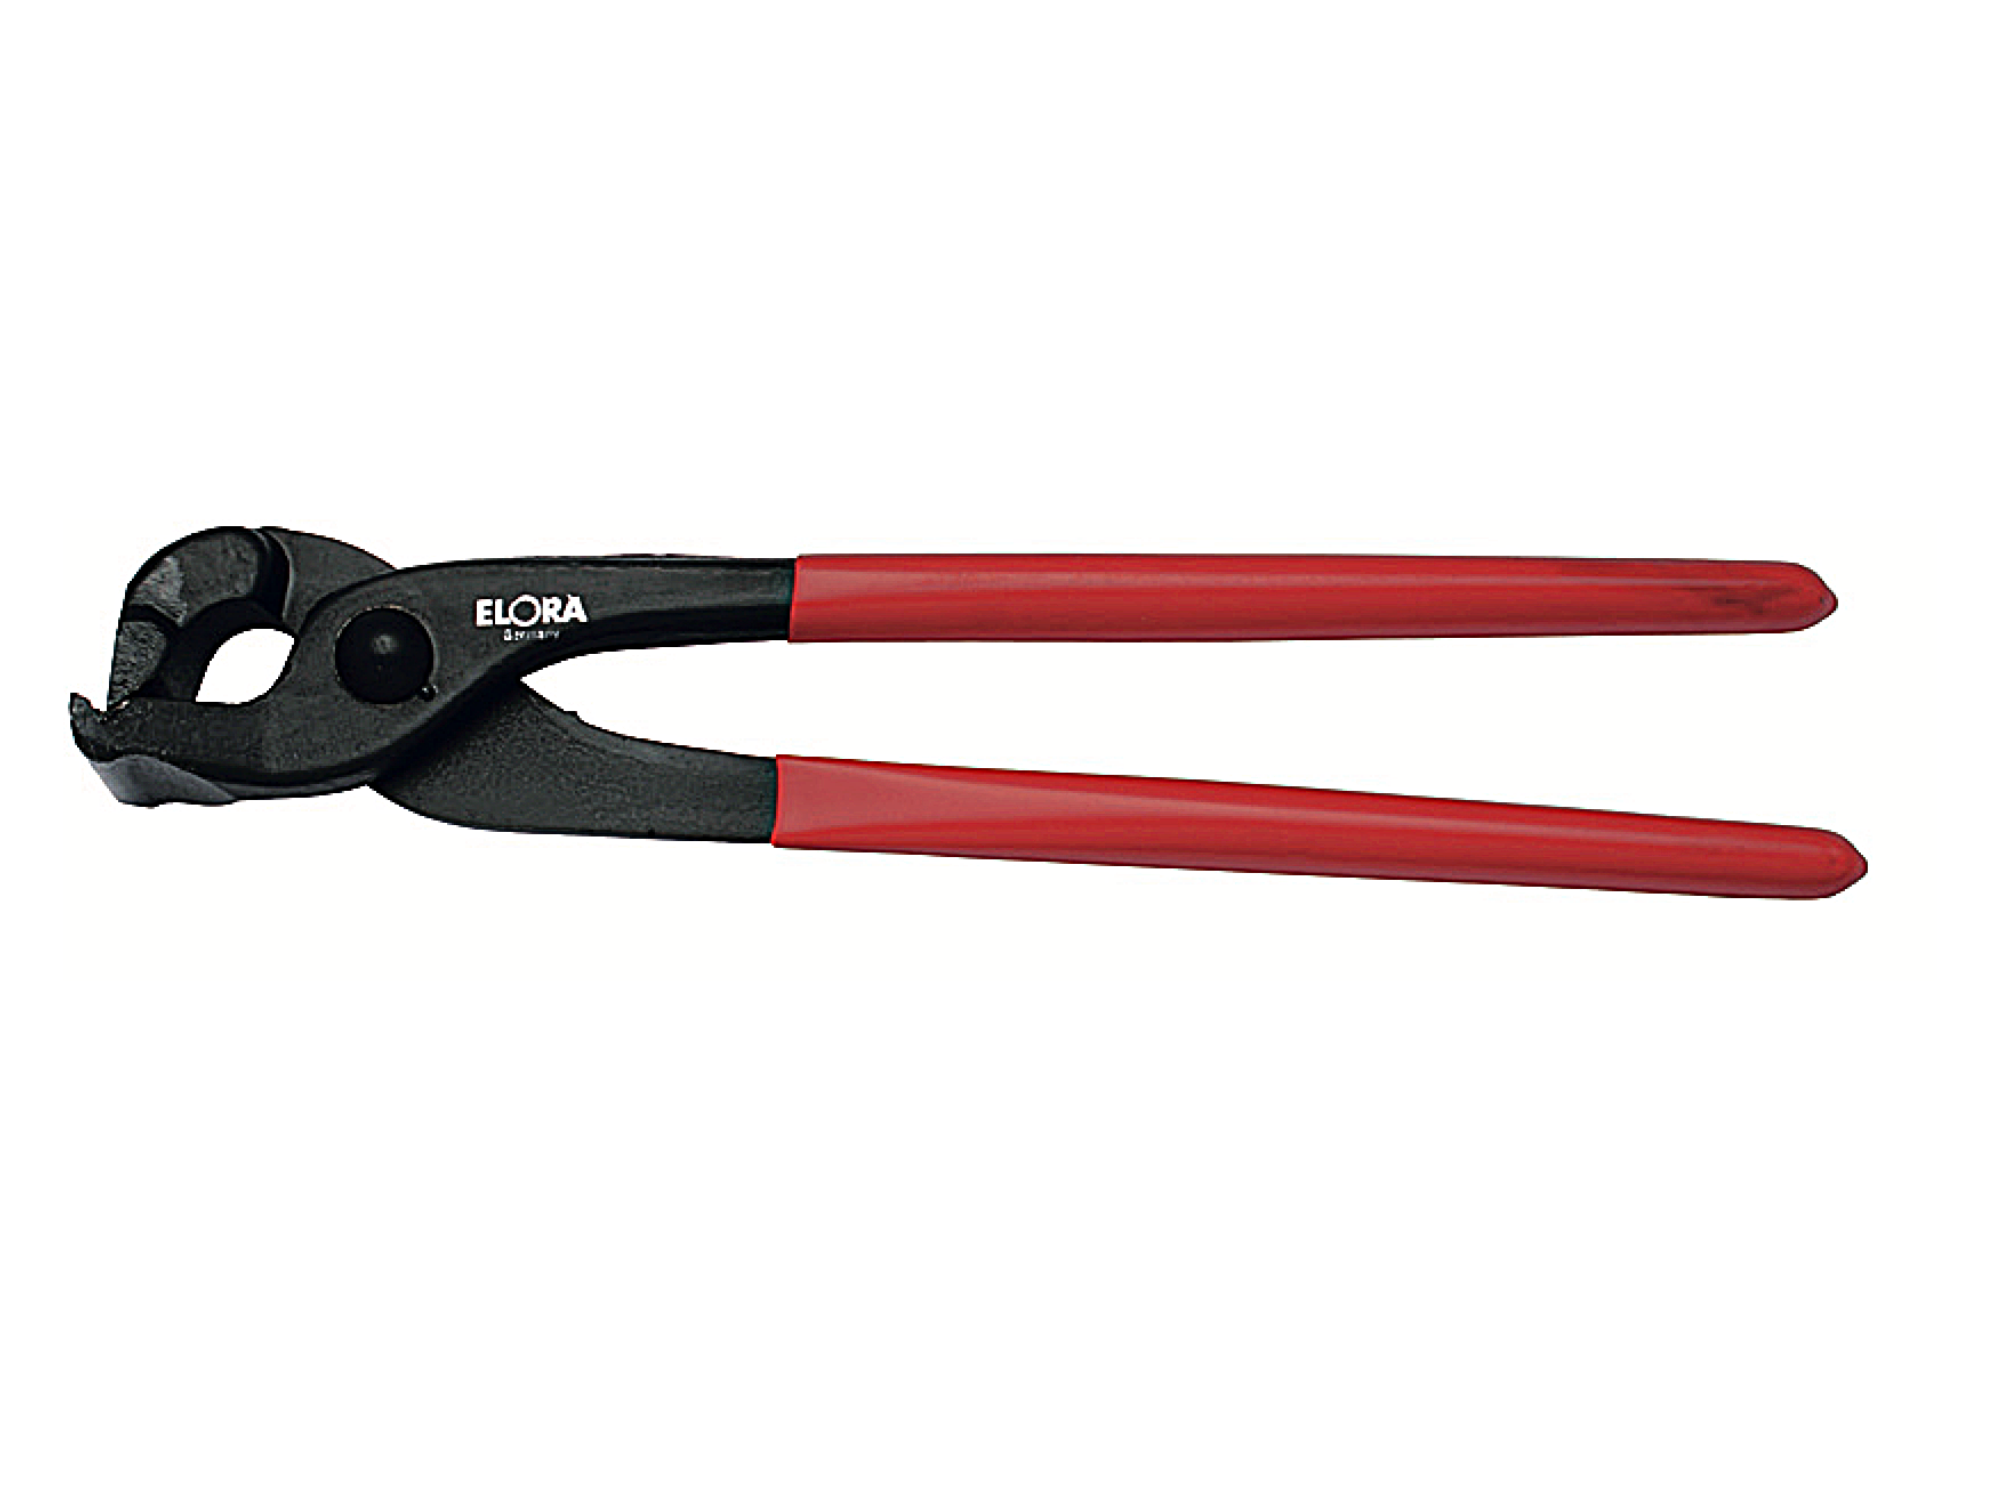 ELORA 1644-10 Seaming or Bending Plier (ELORA Tools) - Premium Bending Plier from ELORA - Shop now at Yew Aik.